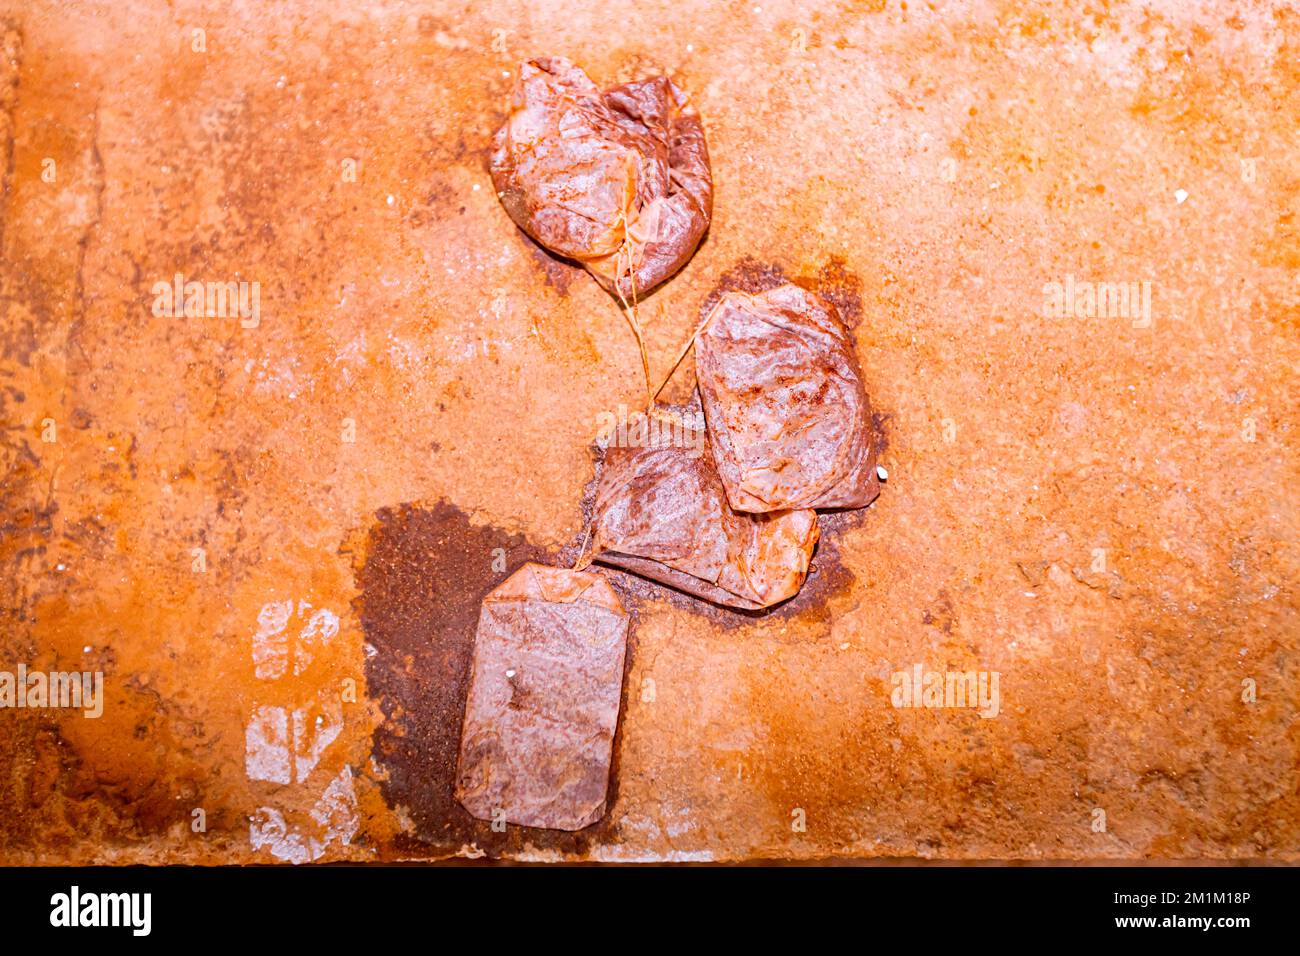 Nach der Teezeit warfen die Arbeiter nasse Teebeutel auf die Orange, schmutzig, mit Kaffee verschmiert, Betonboden des Gebäudes im Bau. Stockfoto